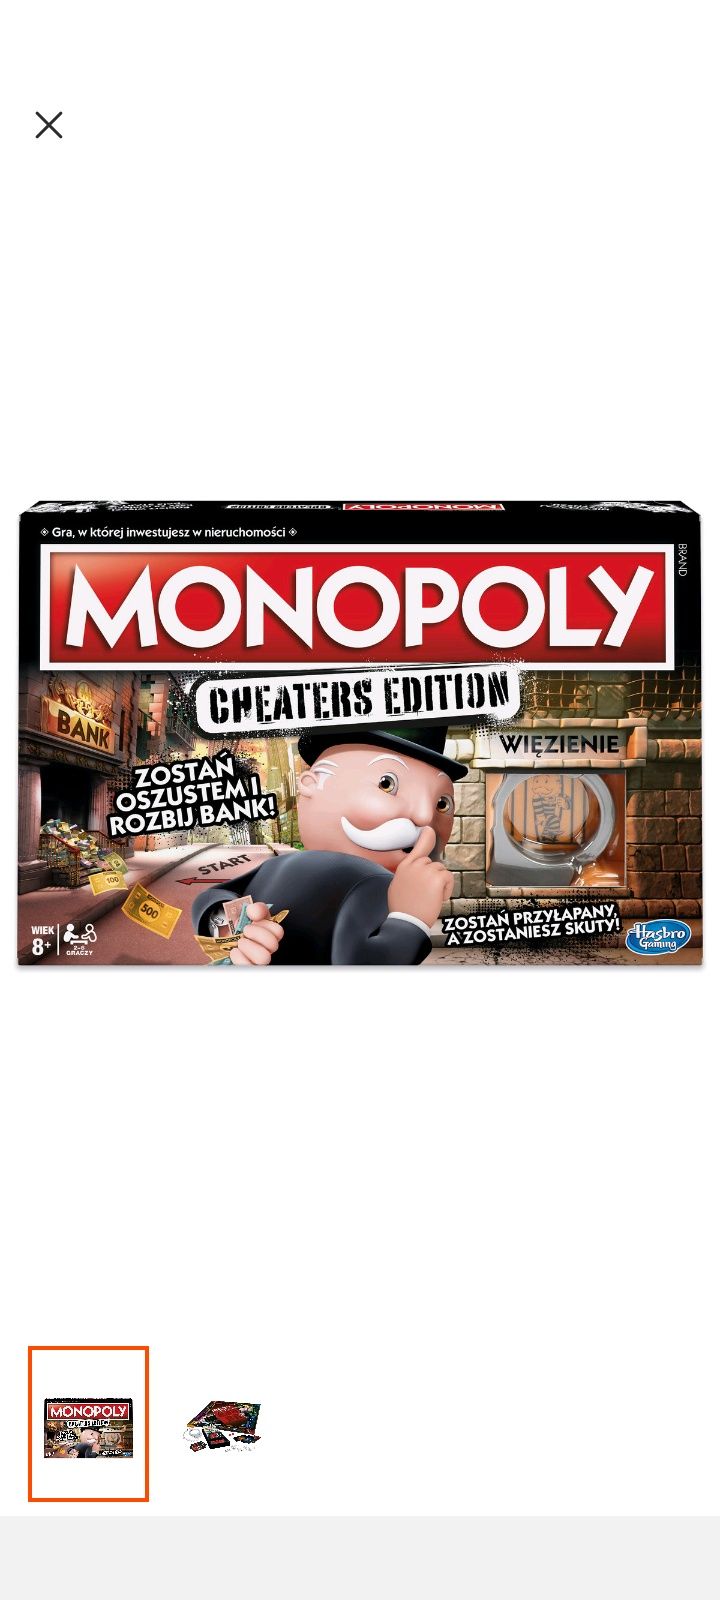 Monopoly gra planszowa